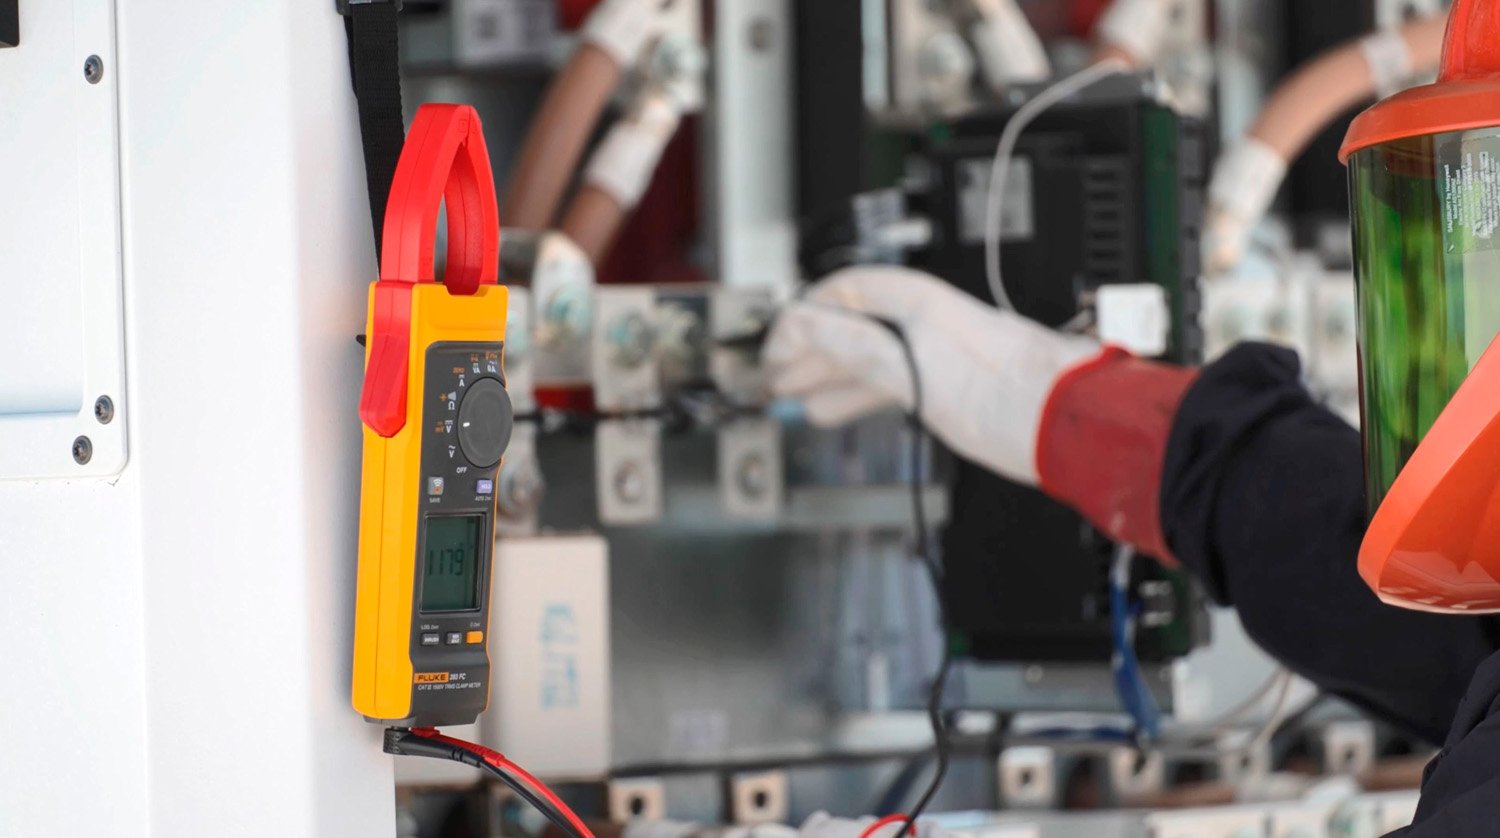 Eine Fluke 393 FC Strommesszange hängt neben einem geöffneten Wechselrichter, während ein Techniker, der PSA (inklusive Handschuhe und Gesichtsschutz) trägt, mit den Messleitungen eine Messung vornimmt.